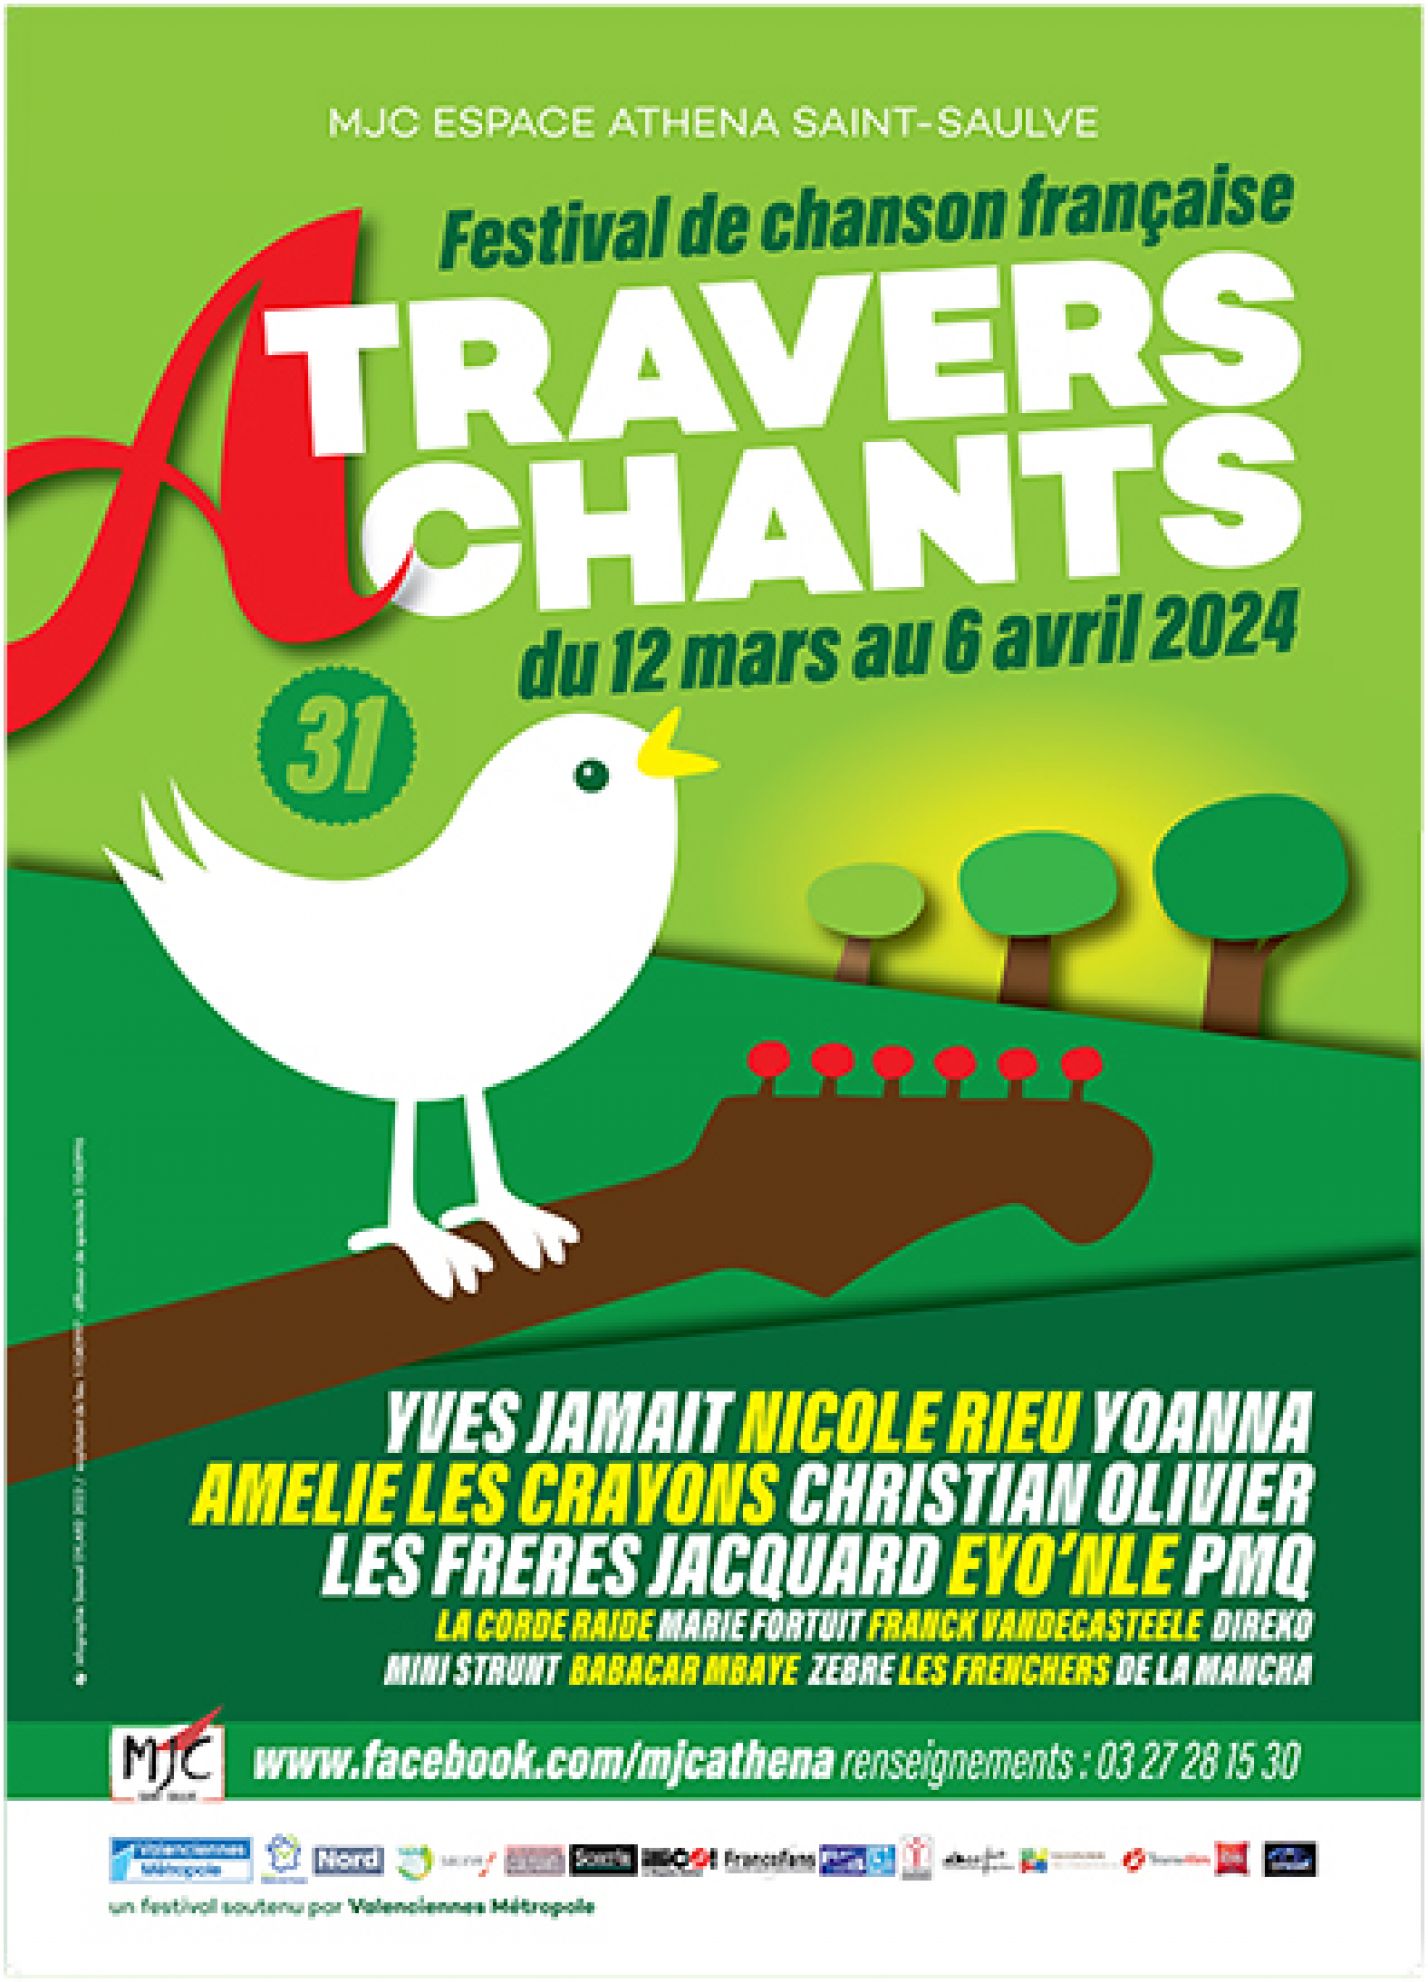 FRANK CHANTE L'AMOUR - FESTIVAL A TRAVERS CHANTS 2024